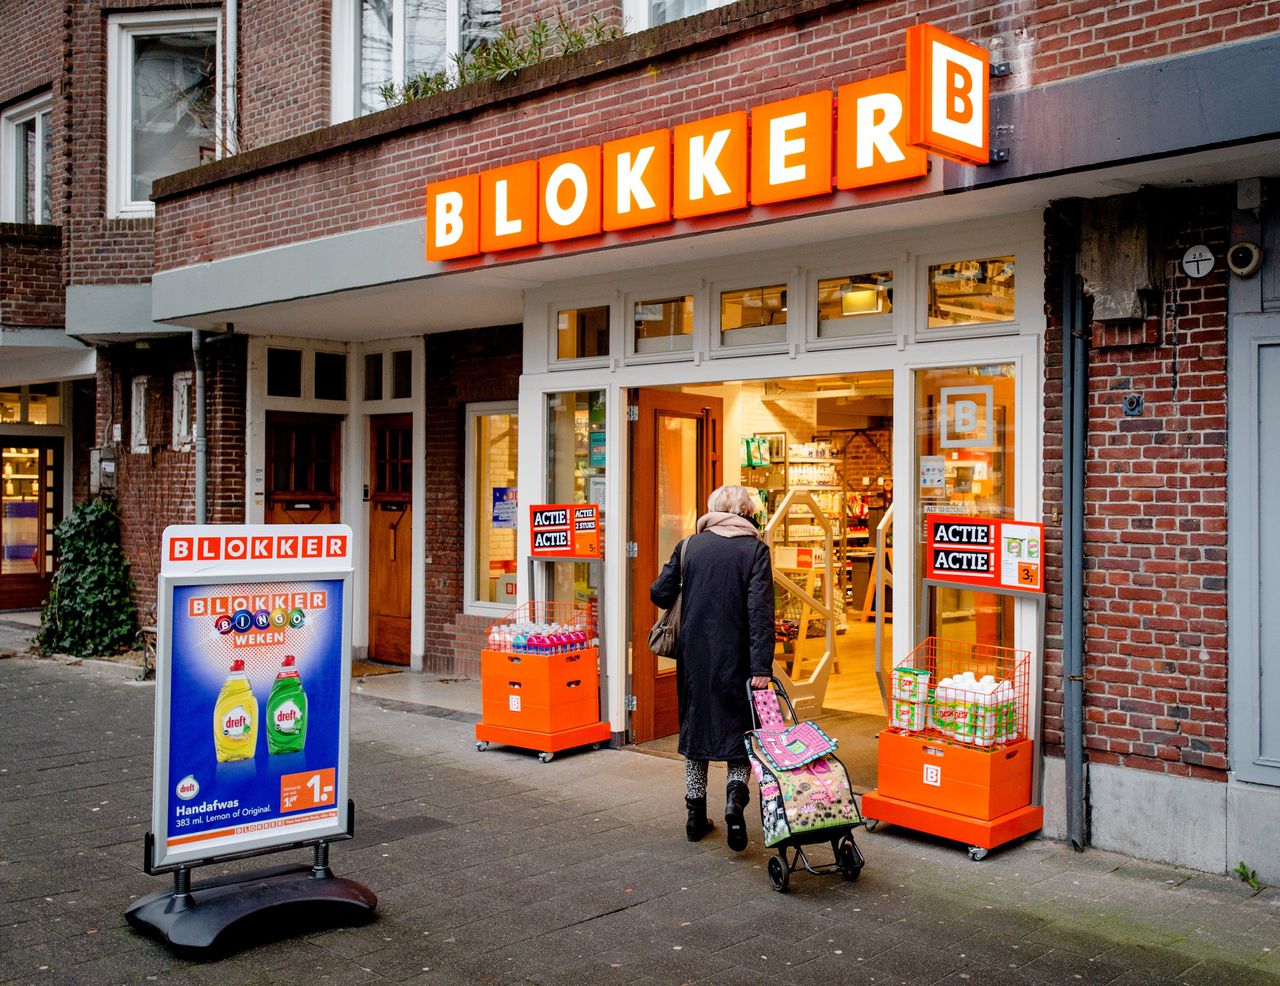 Klas Wieg kort Blokker stelt beursgang uit. 'We weten niet of we de volgende dag wel open  mogen' - NRC